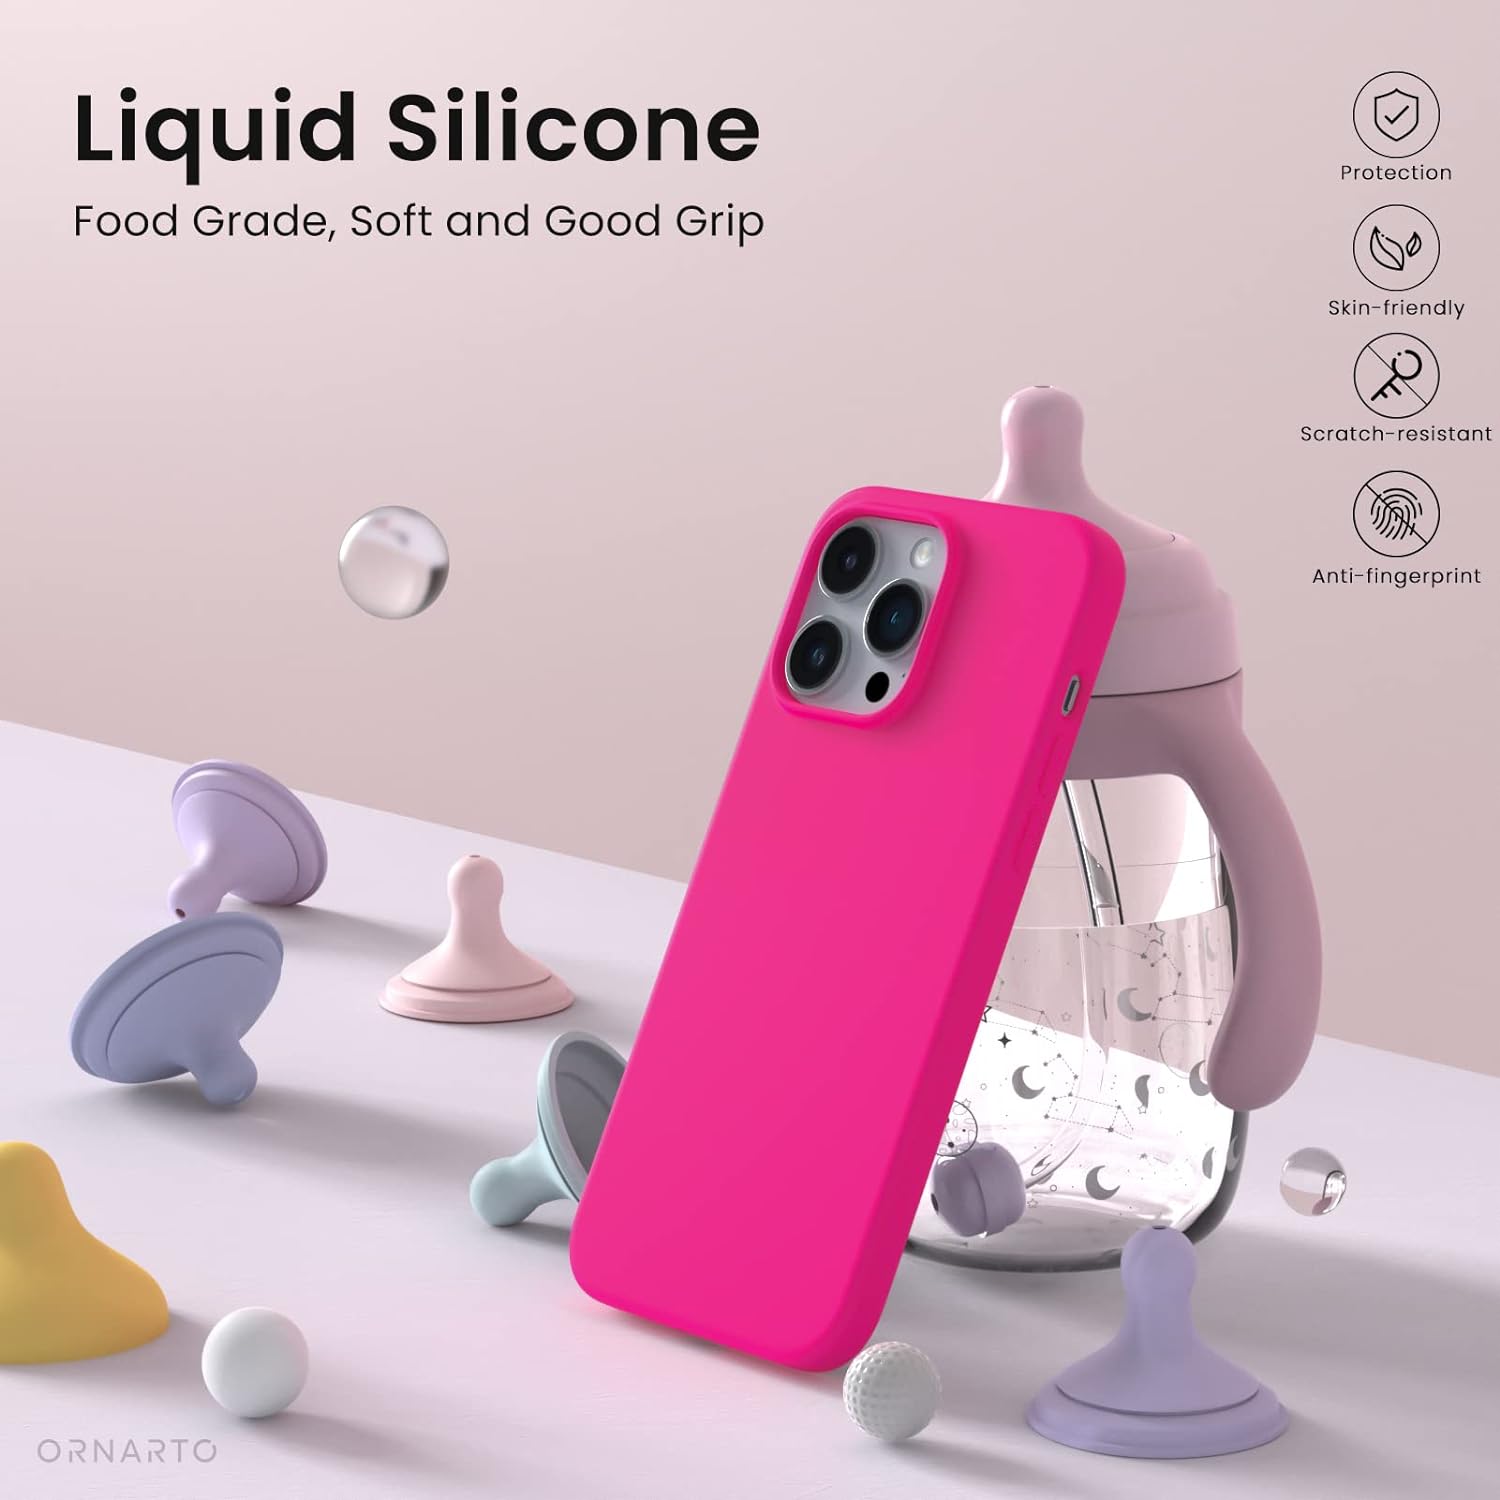 Weiche, matte Silikonhülle für iPhone-Modell, Pink